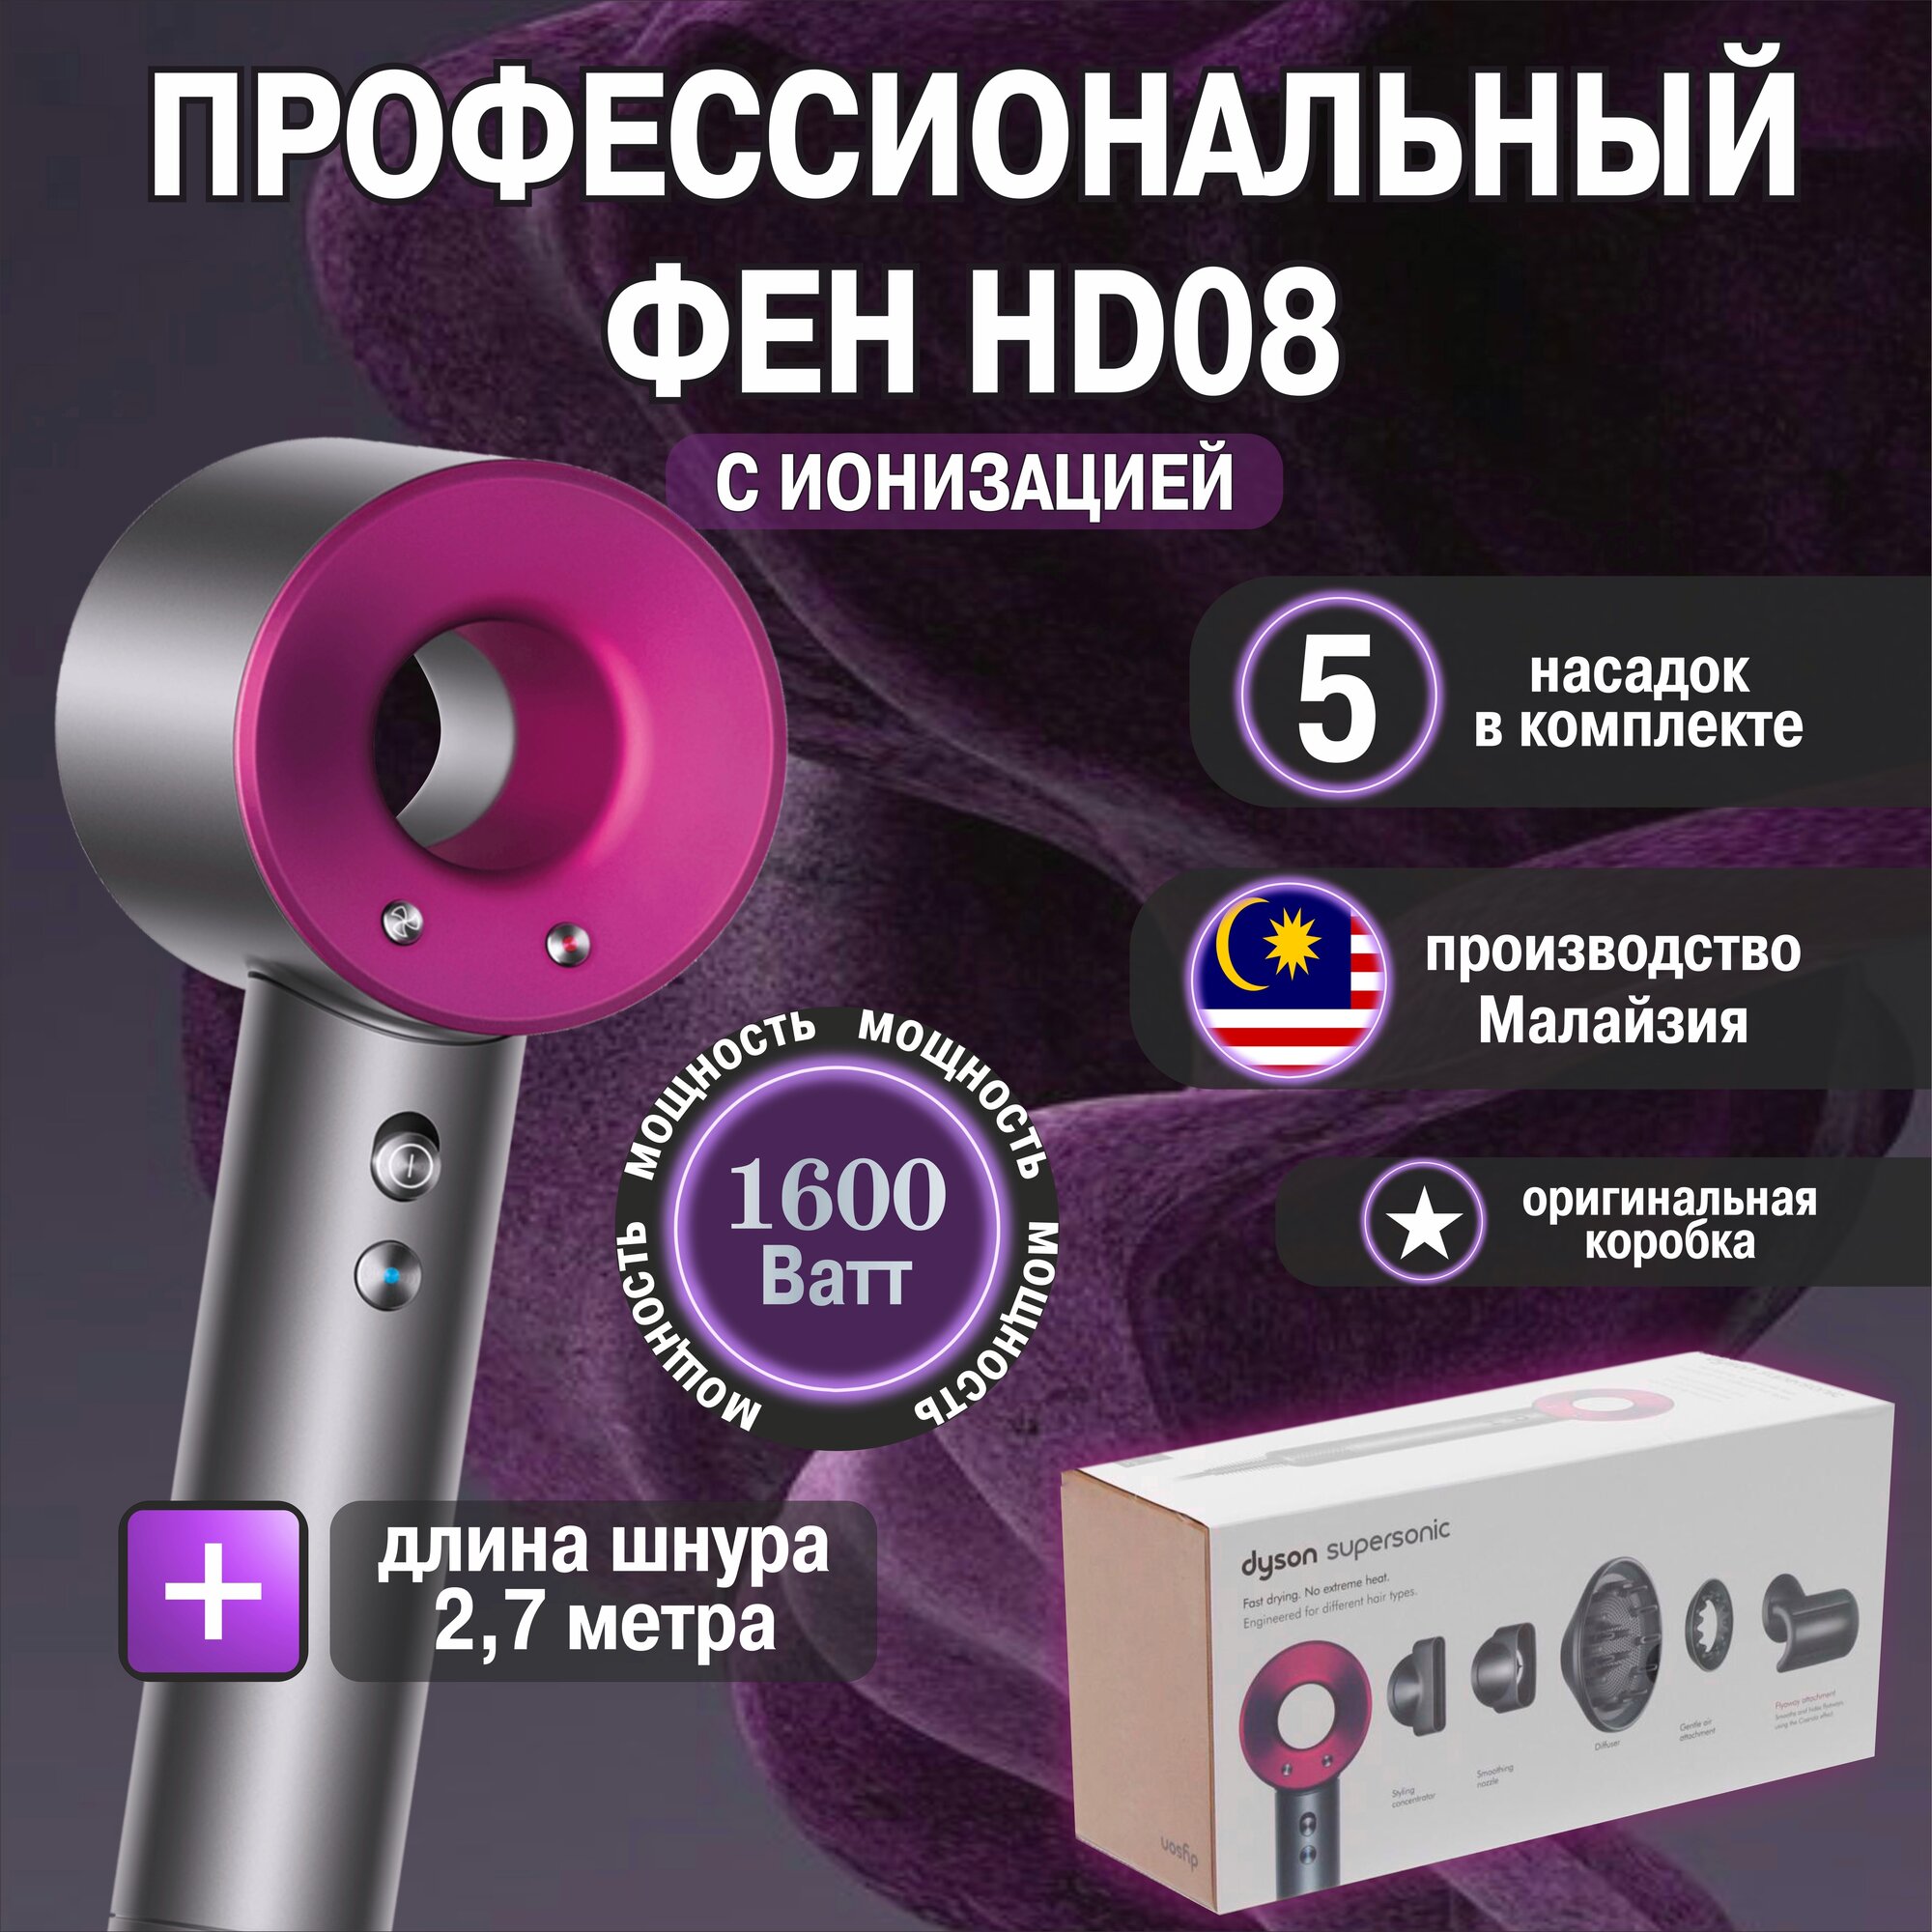 Профессиональный фен для волос HD08 с ионизацией/ Premium качество / 5 насадок / Малайзия